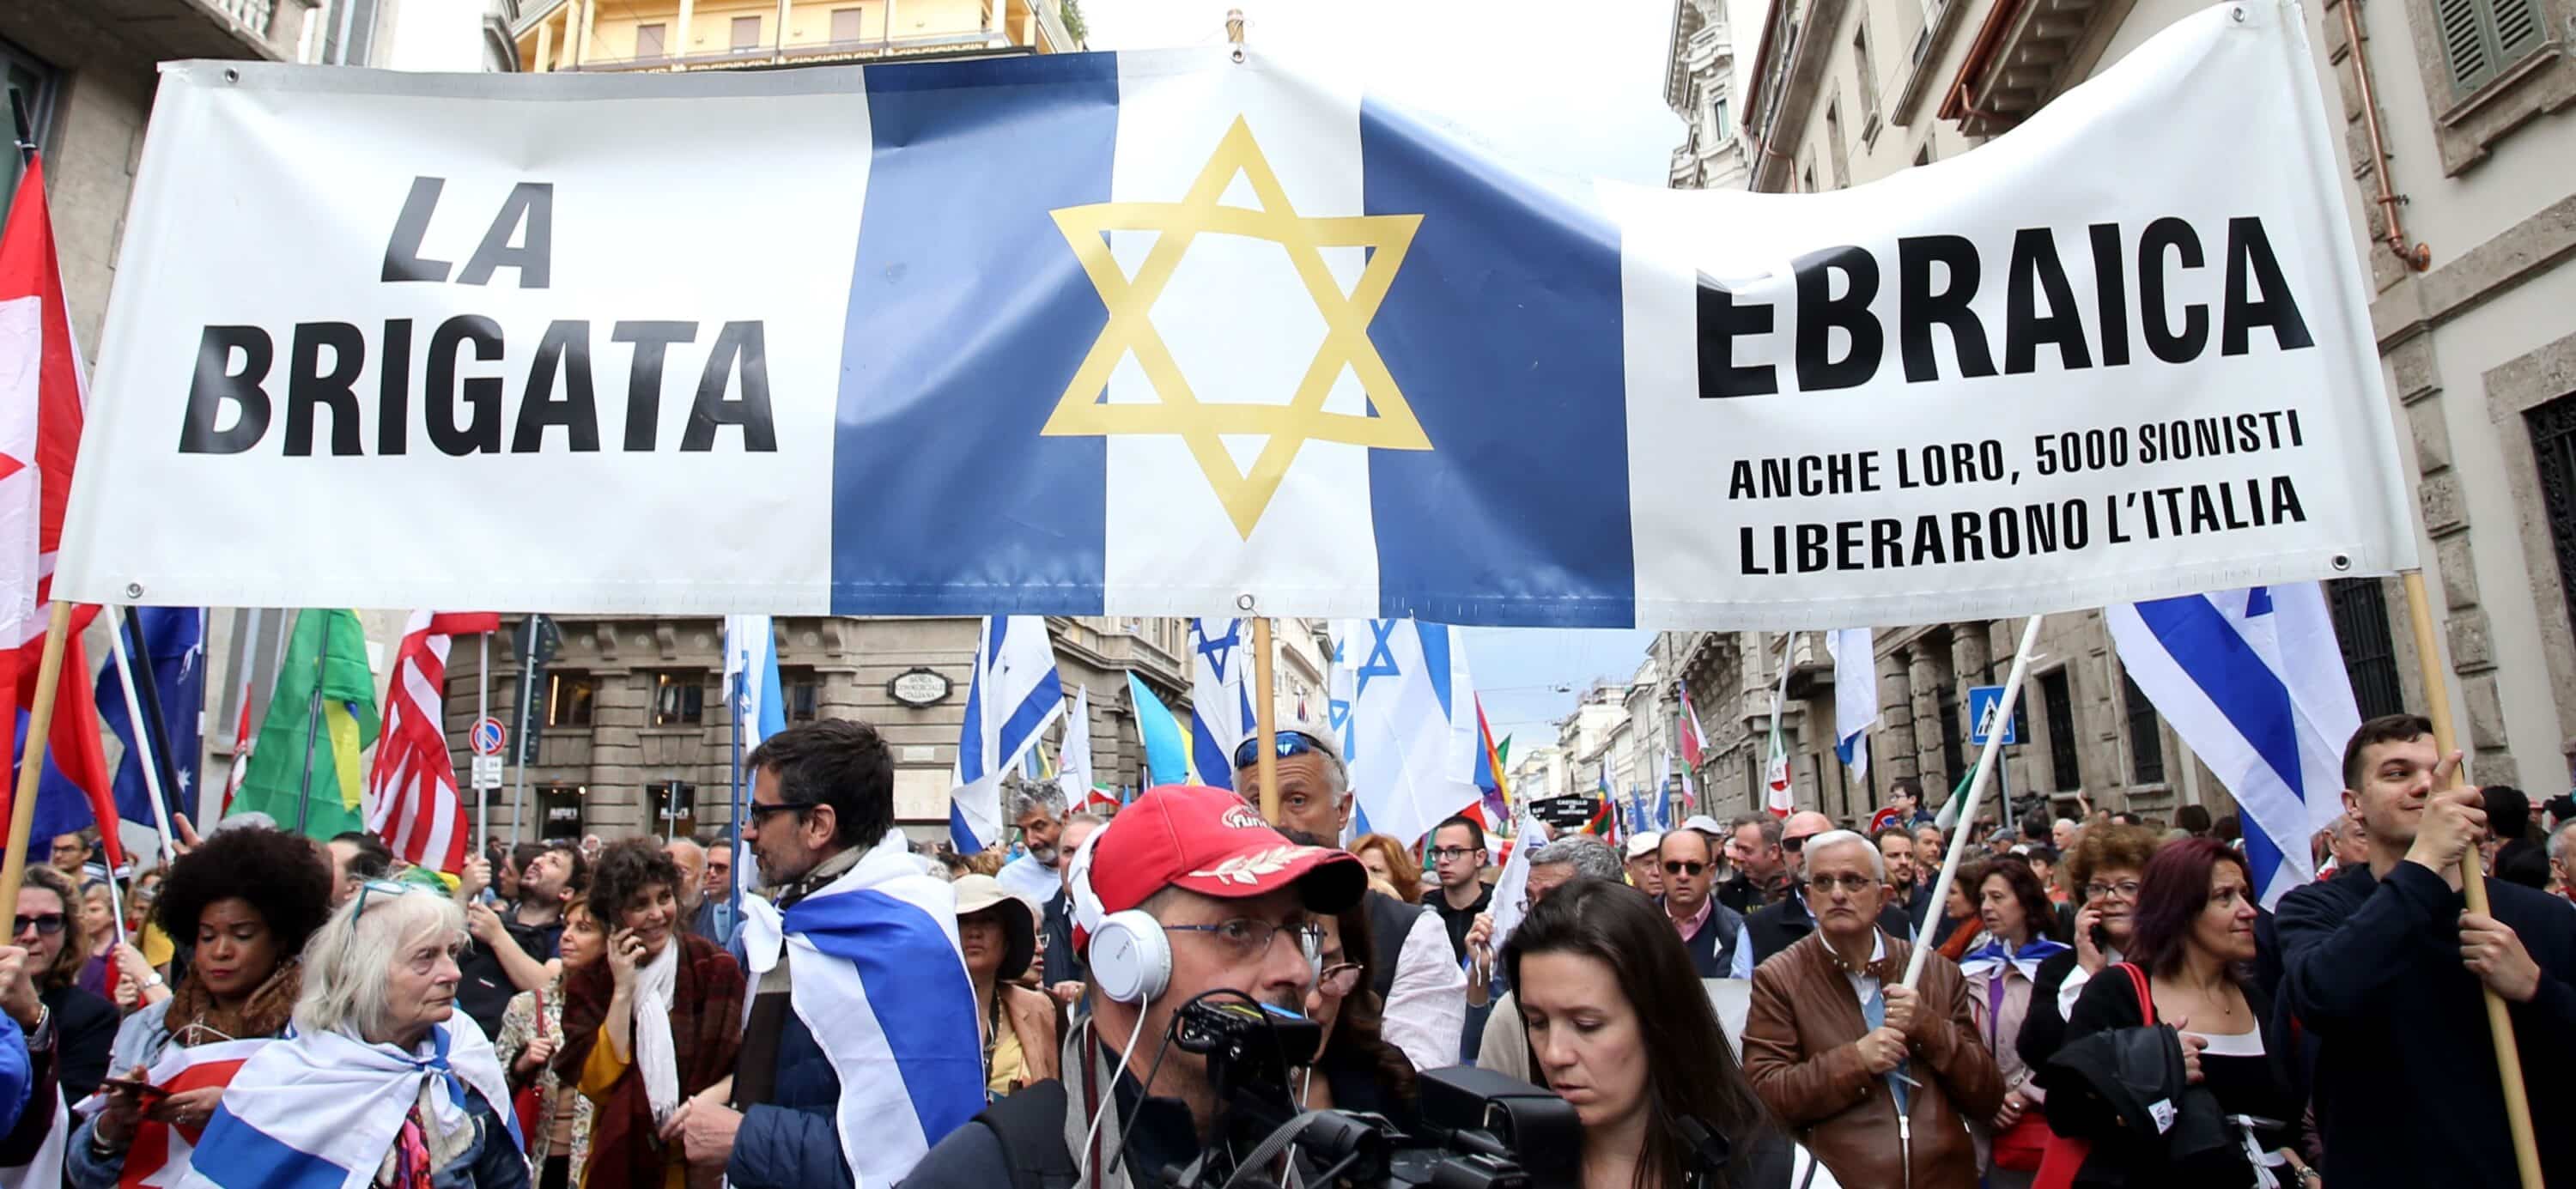 Festa della Liberazione ad alta tensione, a Roma attivisti pro Palestina e Brigata ebraica si sono scambiati insulti e accuse